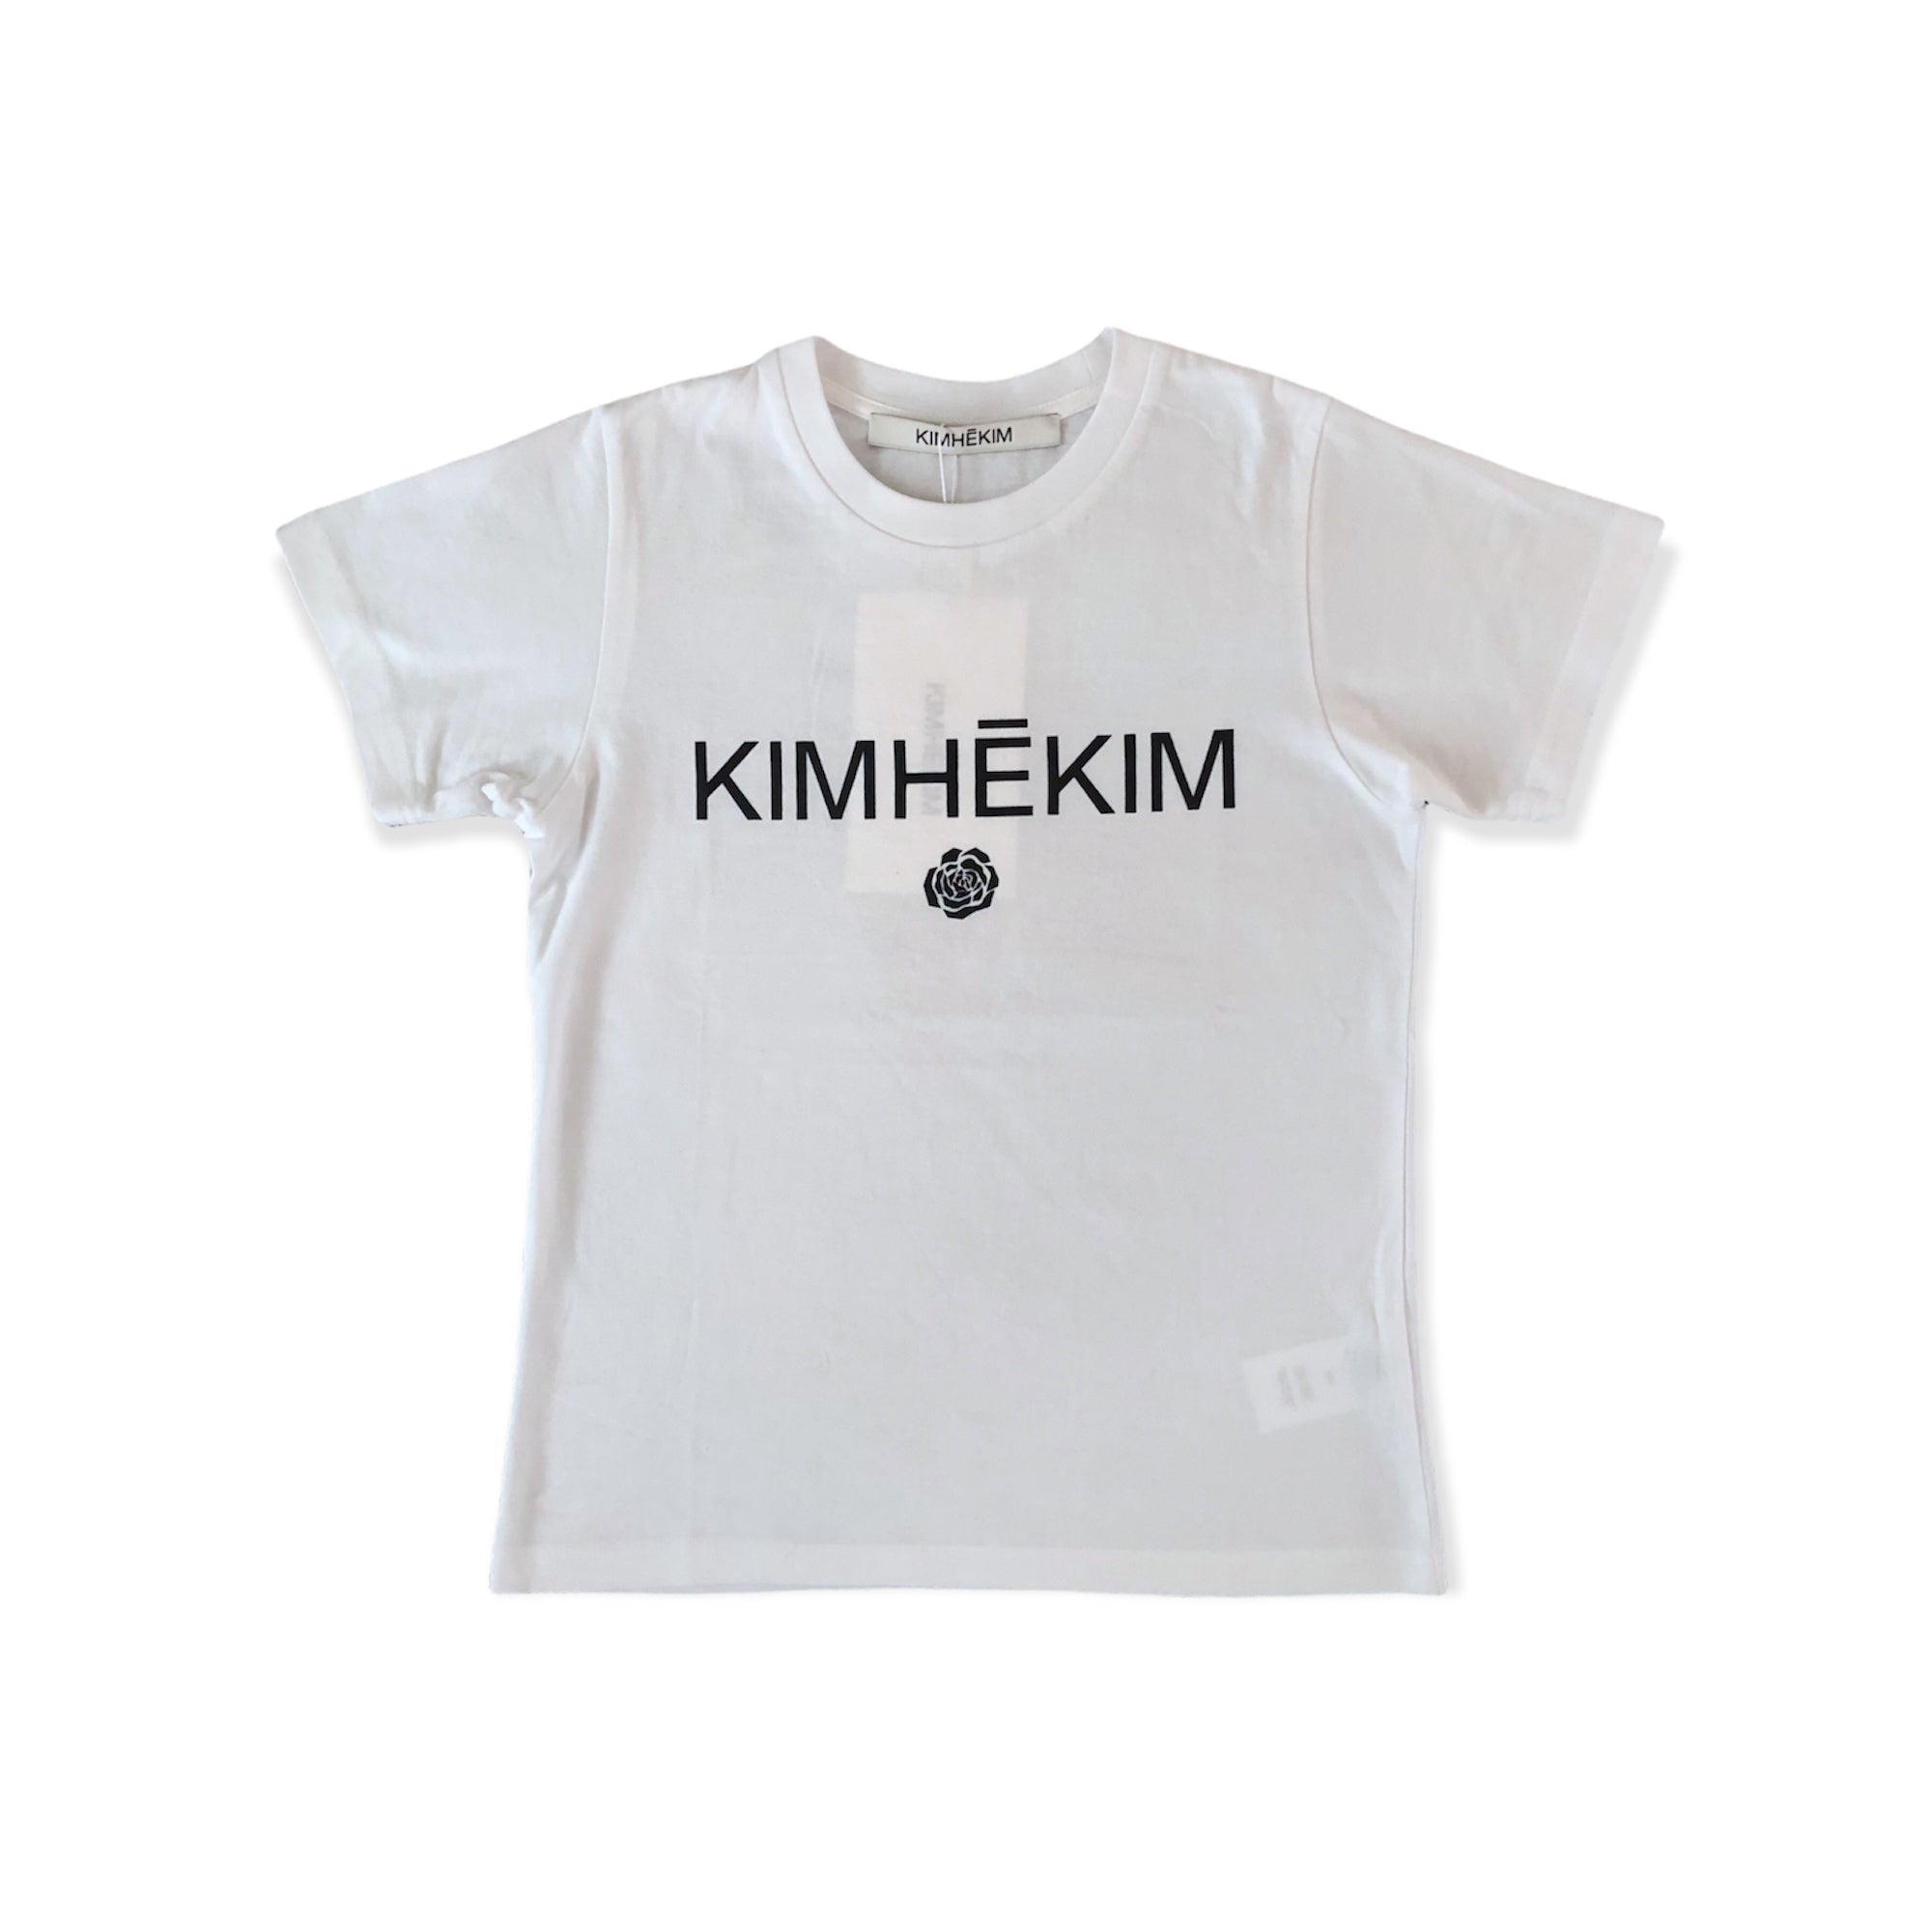 KIMHEKIM KIMHEKIM ROSE T-SHIRTS(KIDS 12YRS)